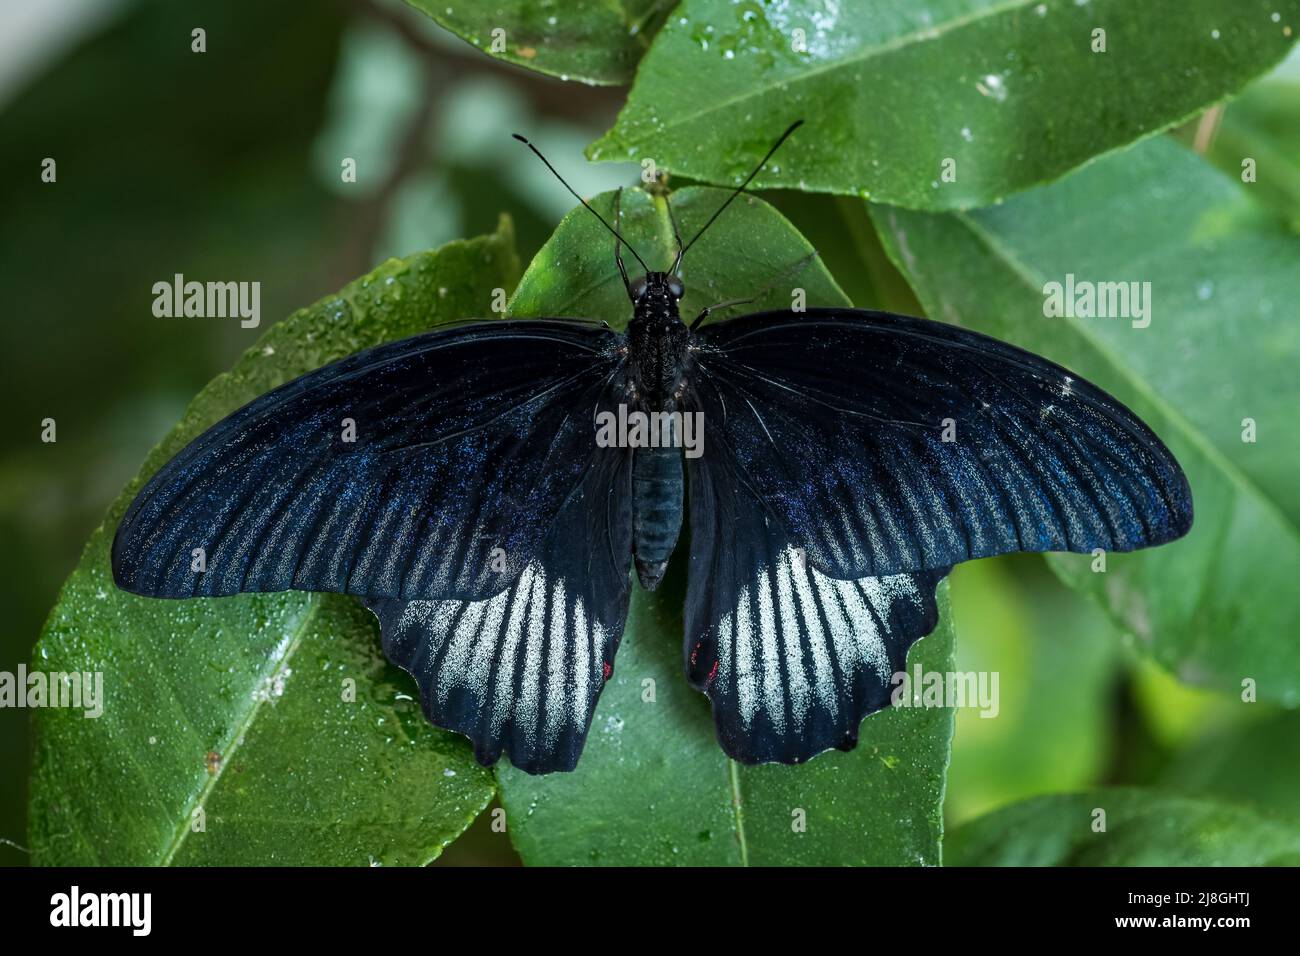 Scarlatto farfalla mormone - Papilio deifobus rumanzovia, bella grande farfalla colorata da foreste e giardini del sud-est asiatico, Sulawesi. Foto Stock